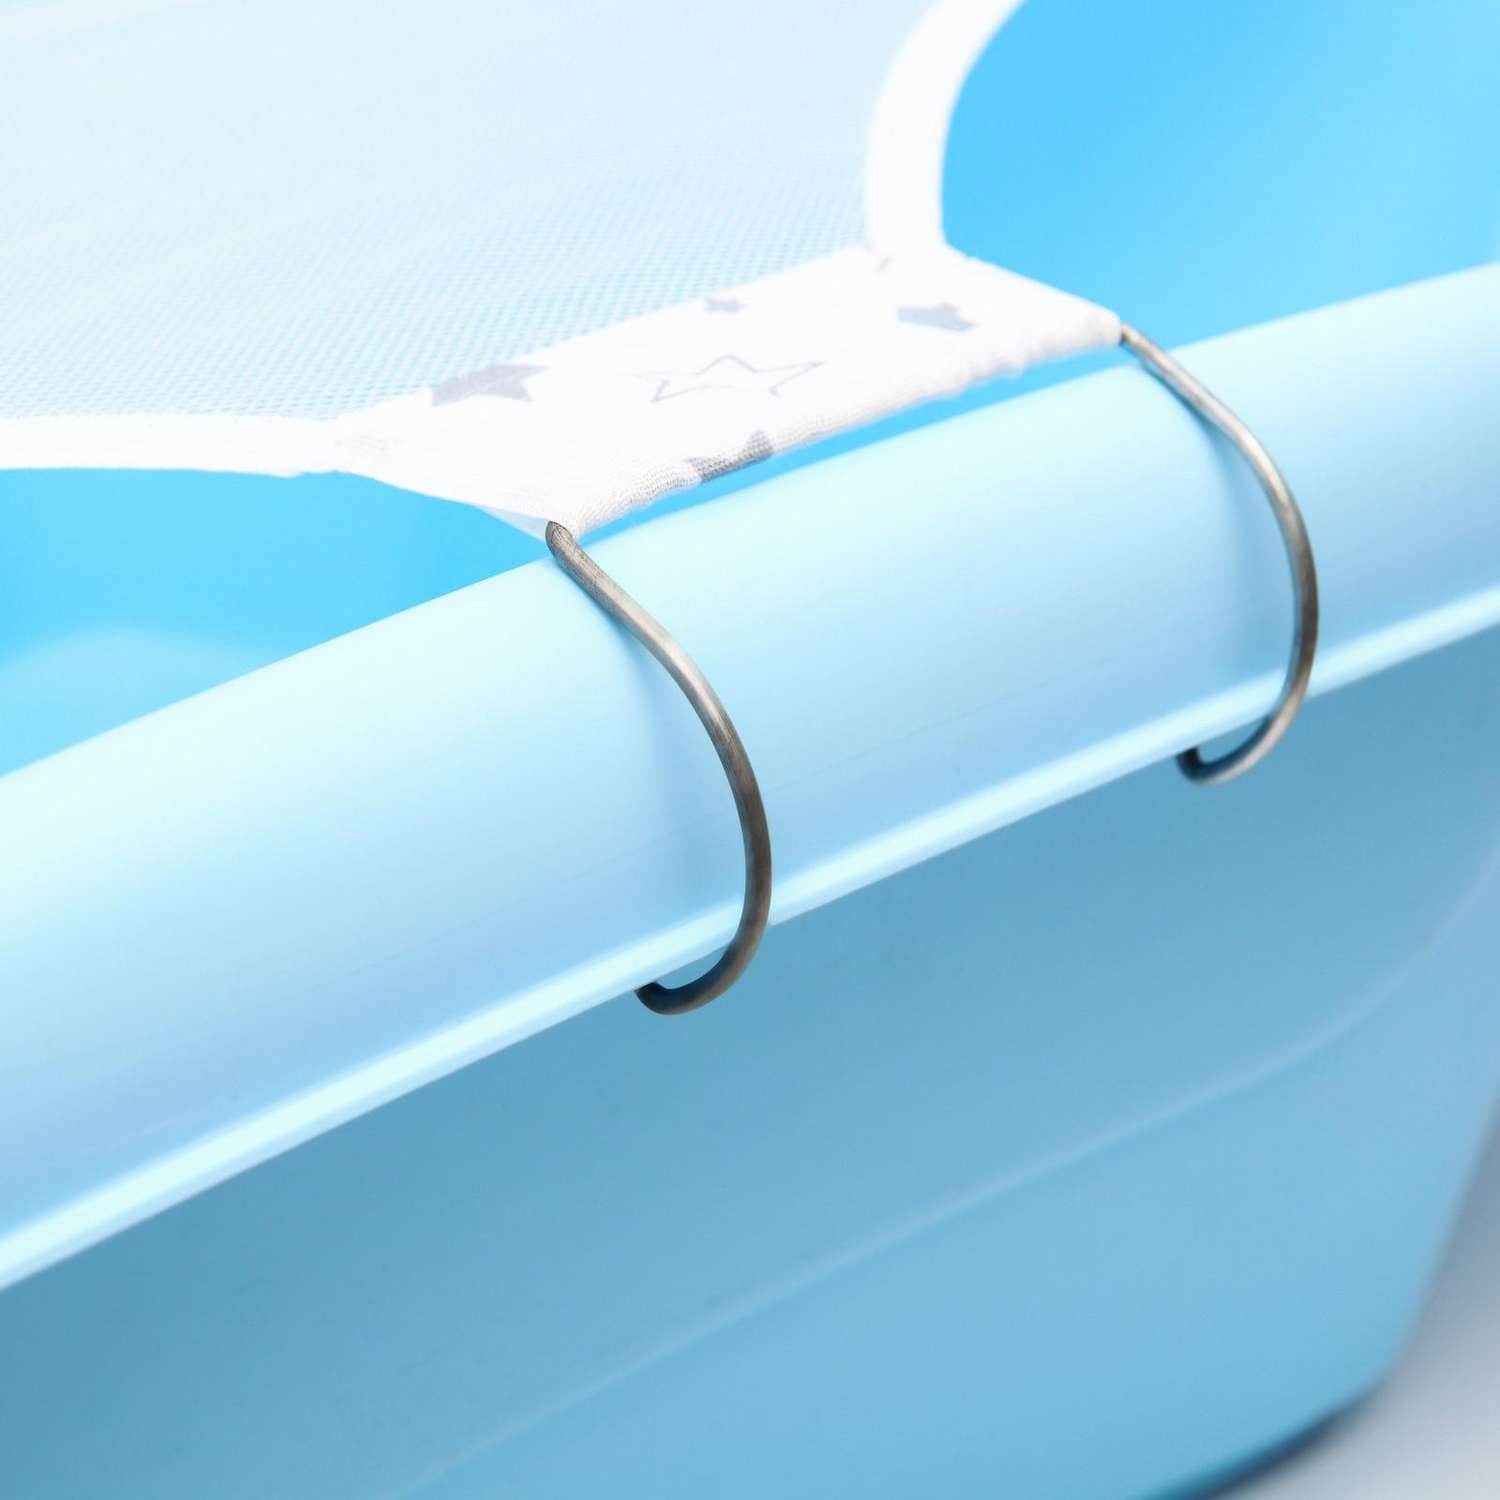 Гамак Sima-Land для купания новорожденных сетка для ванночки детской «Куп-куп» 80 cм Premium цвет белый - фото 2